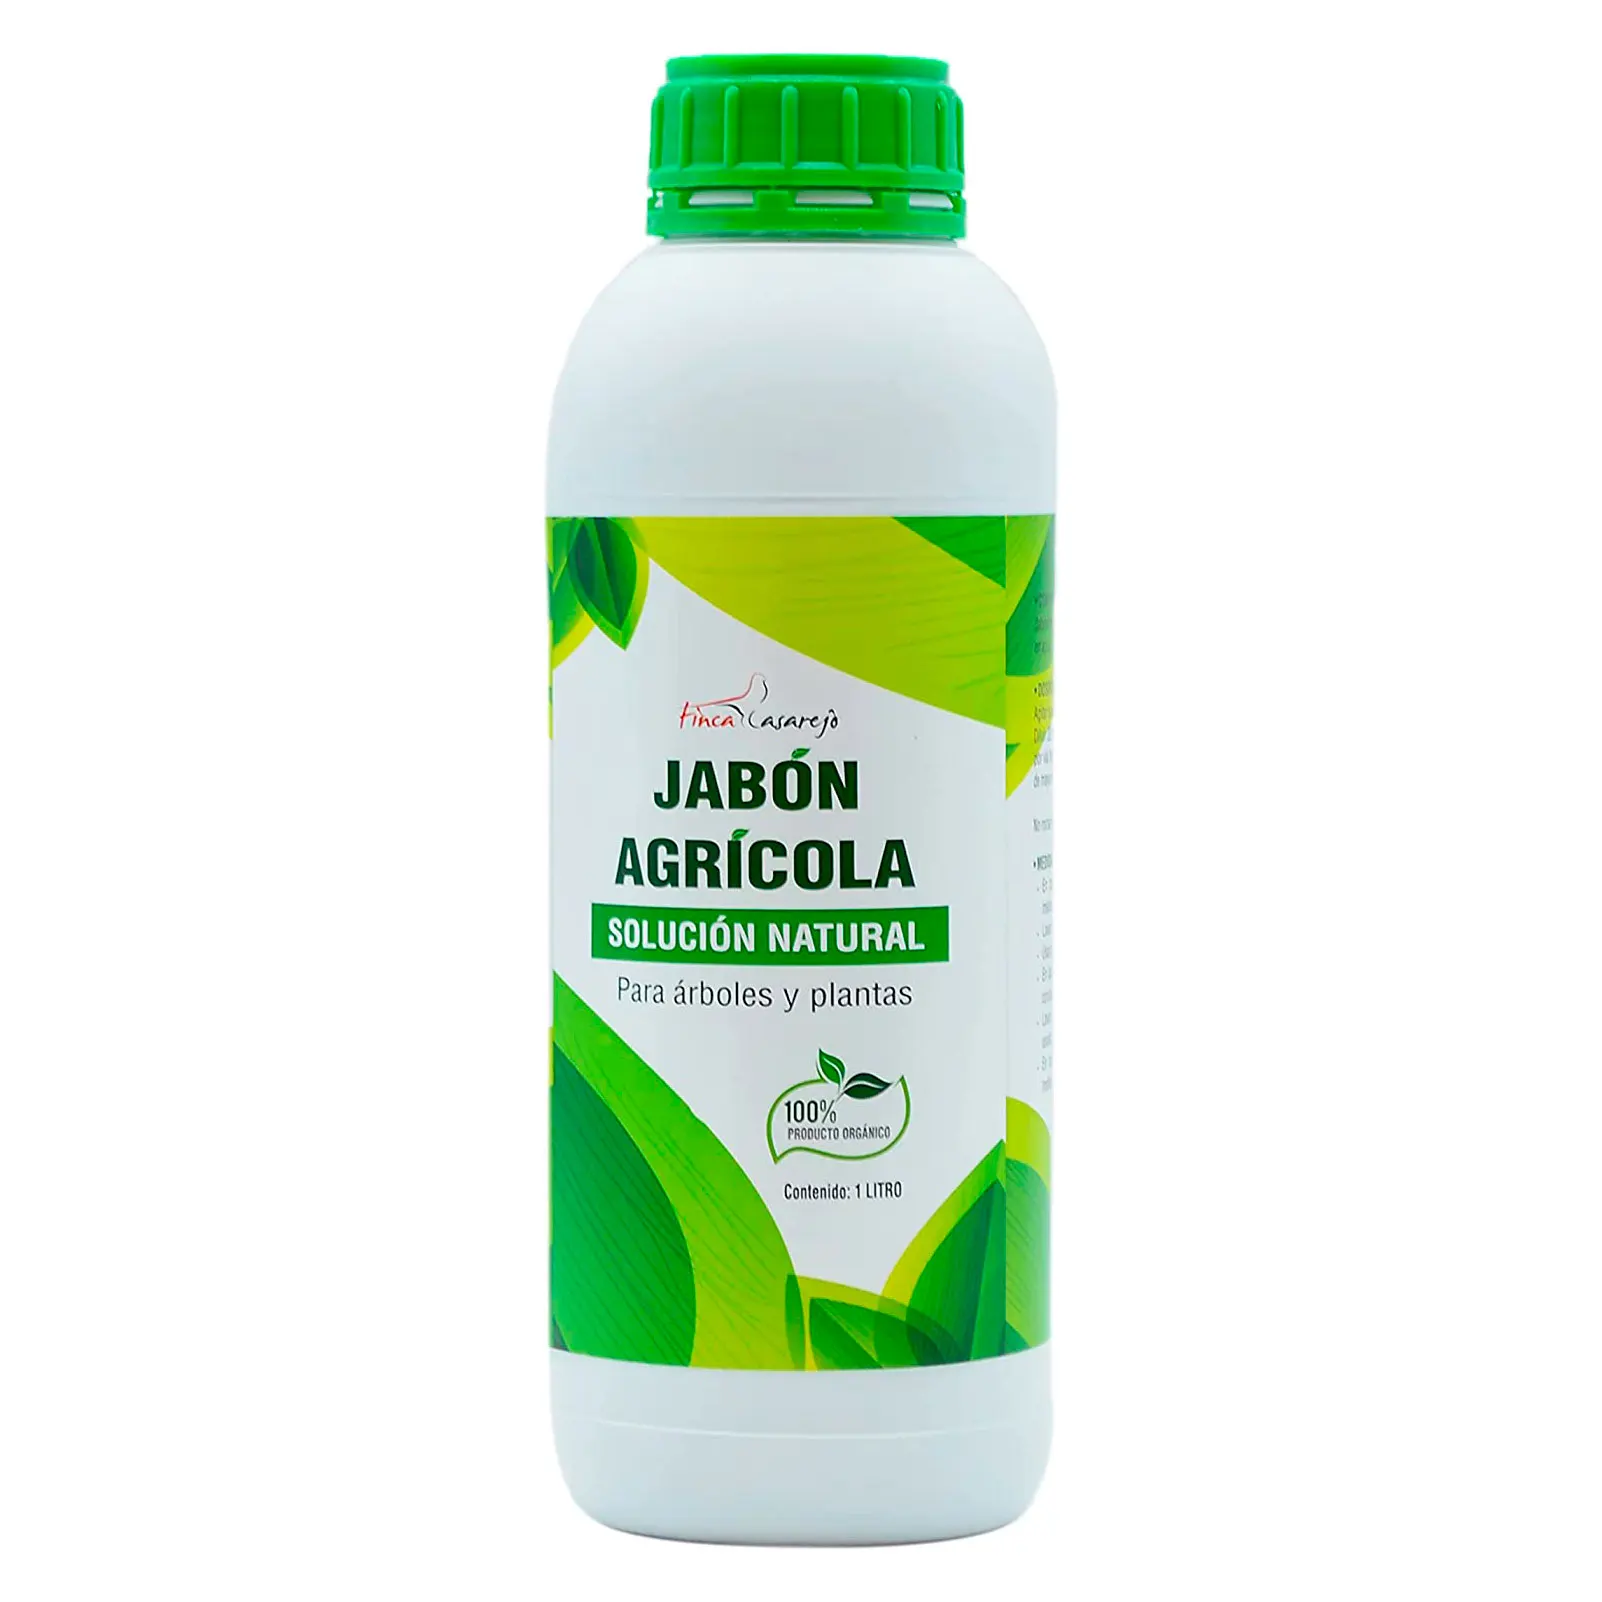 FINCA CASAREJO Jabón agrícola (potásico) de 1 litro - Solución Natural contra los Hongos en Plantas - Limpiador orgánico para árboles y Plantas